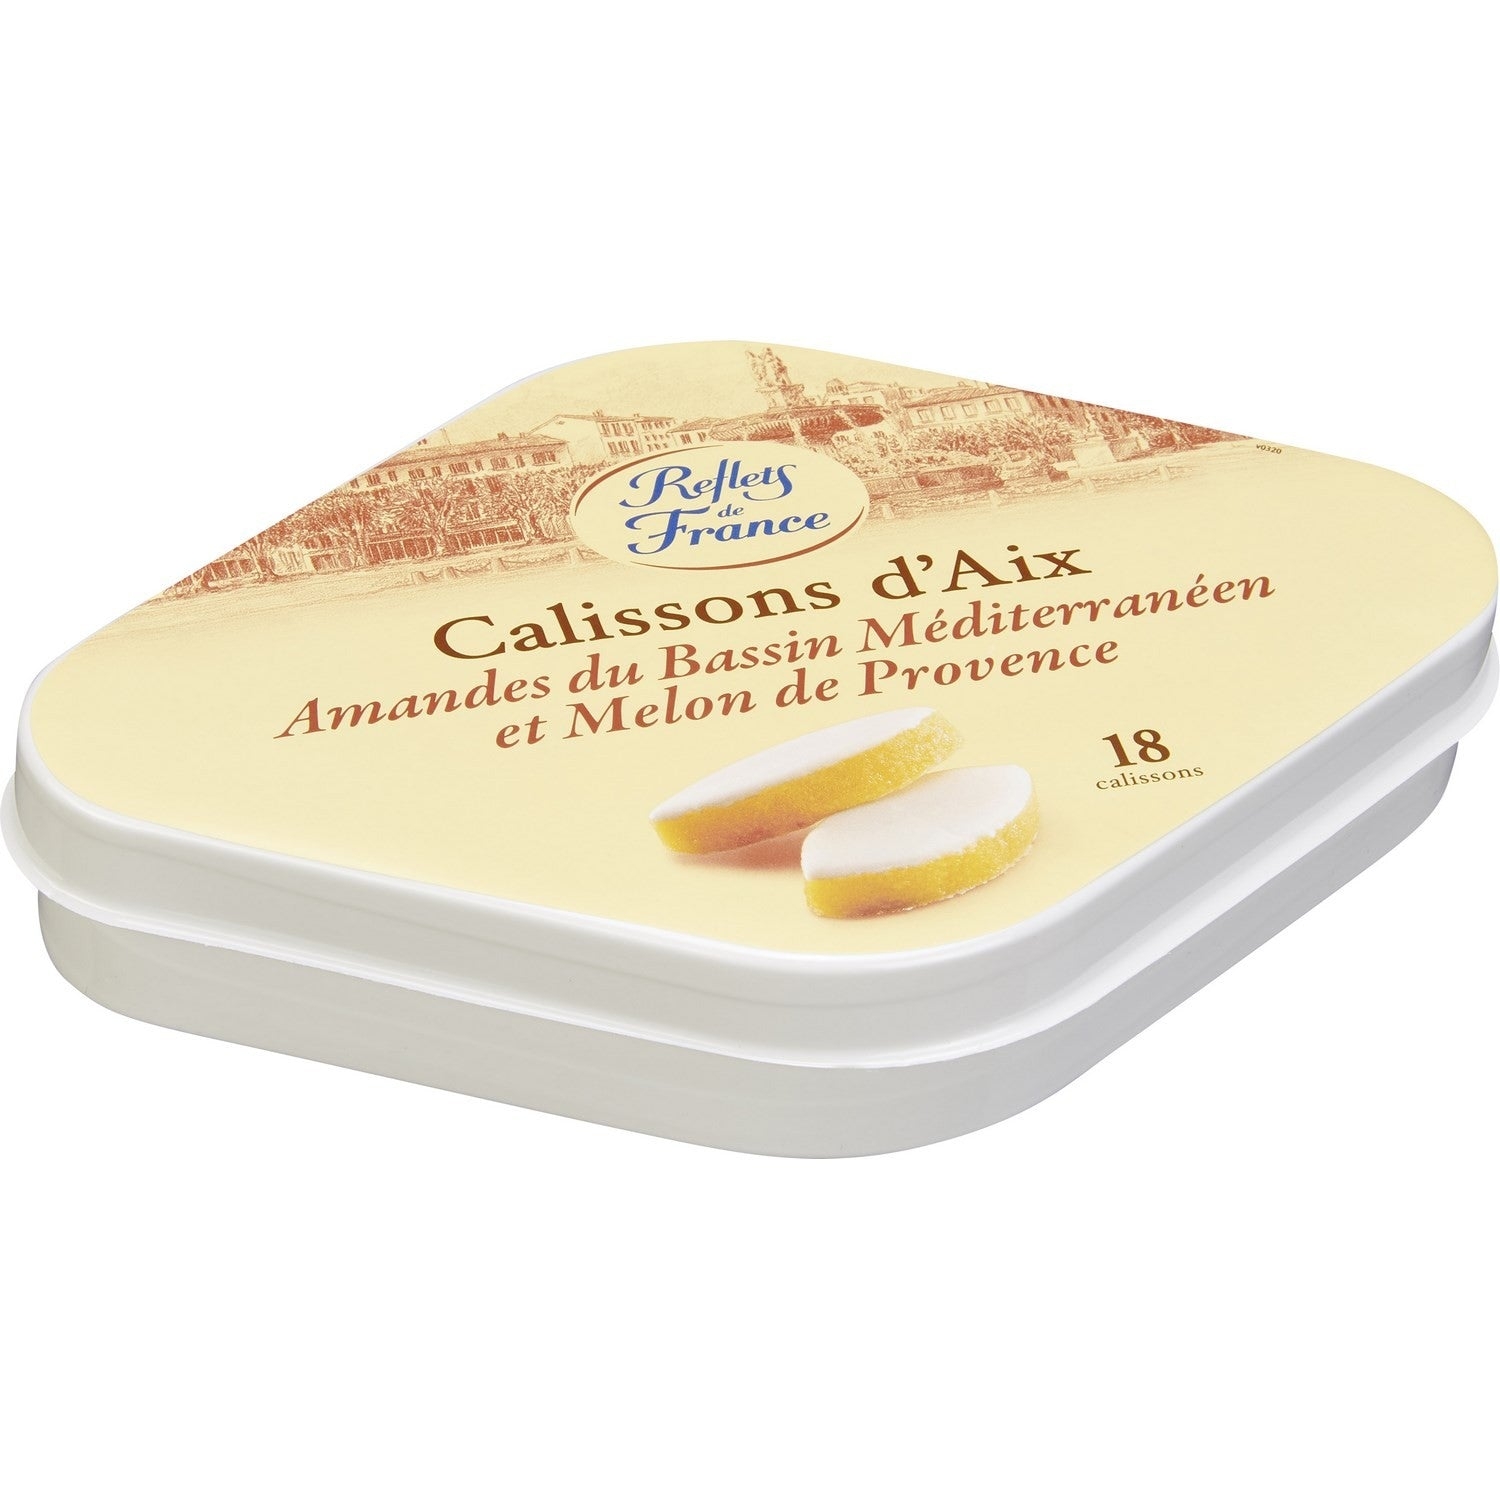 Calissons d’Aix- Calissons d’ Aix-en-Provence – honey & almond – Reflets de France, 250g – Chanteroy – Le Vacherin Deli